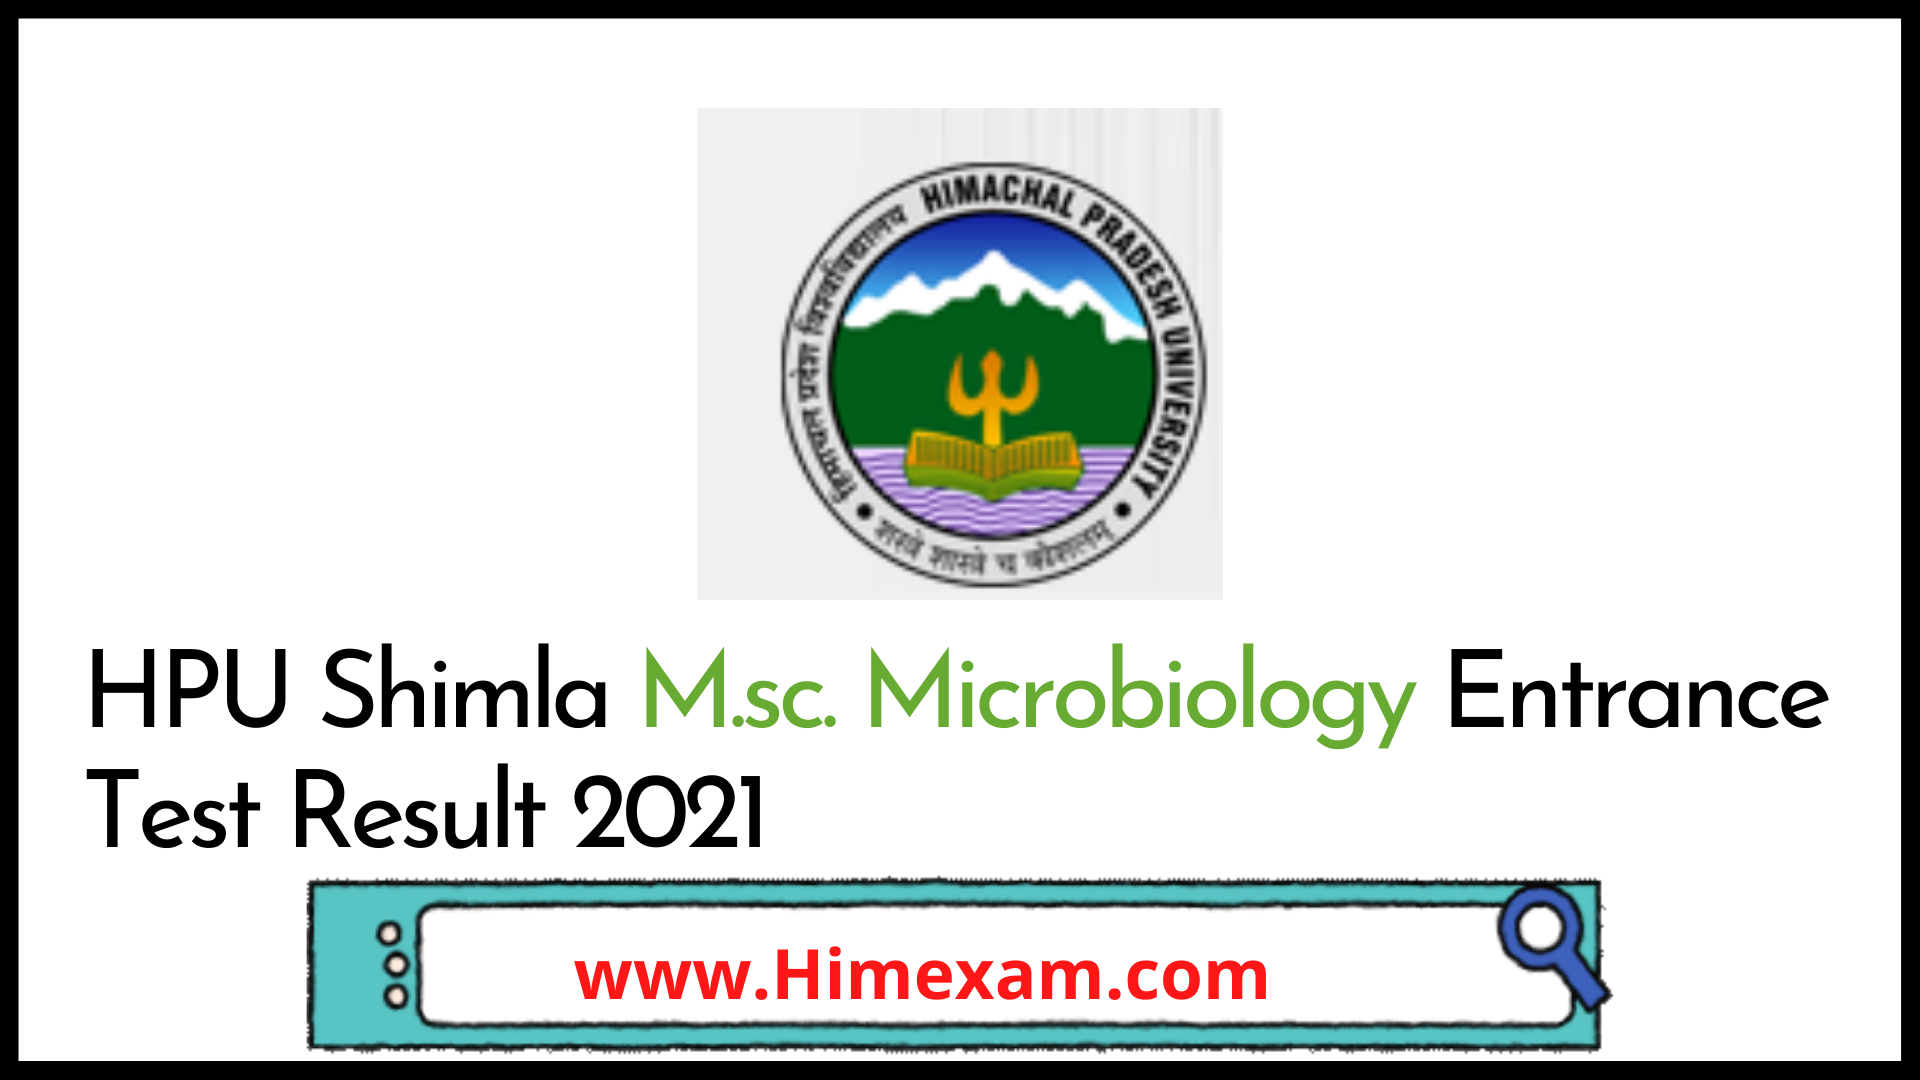 HPU Shimla M.sc. Microbiology Entrance Test Result 2021